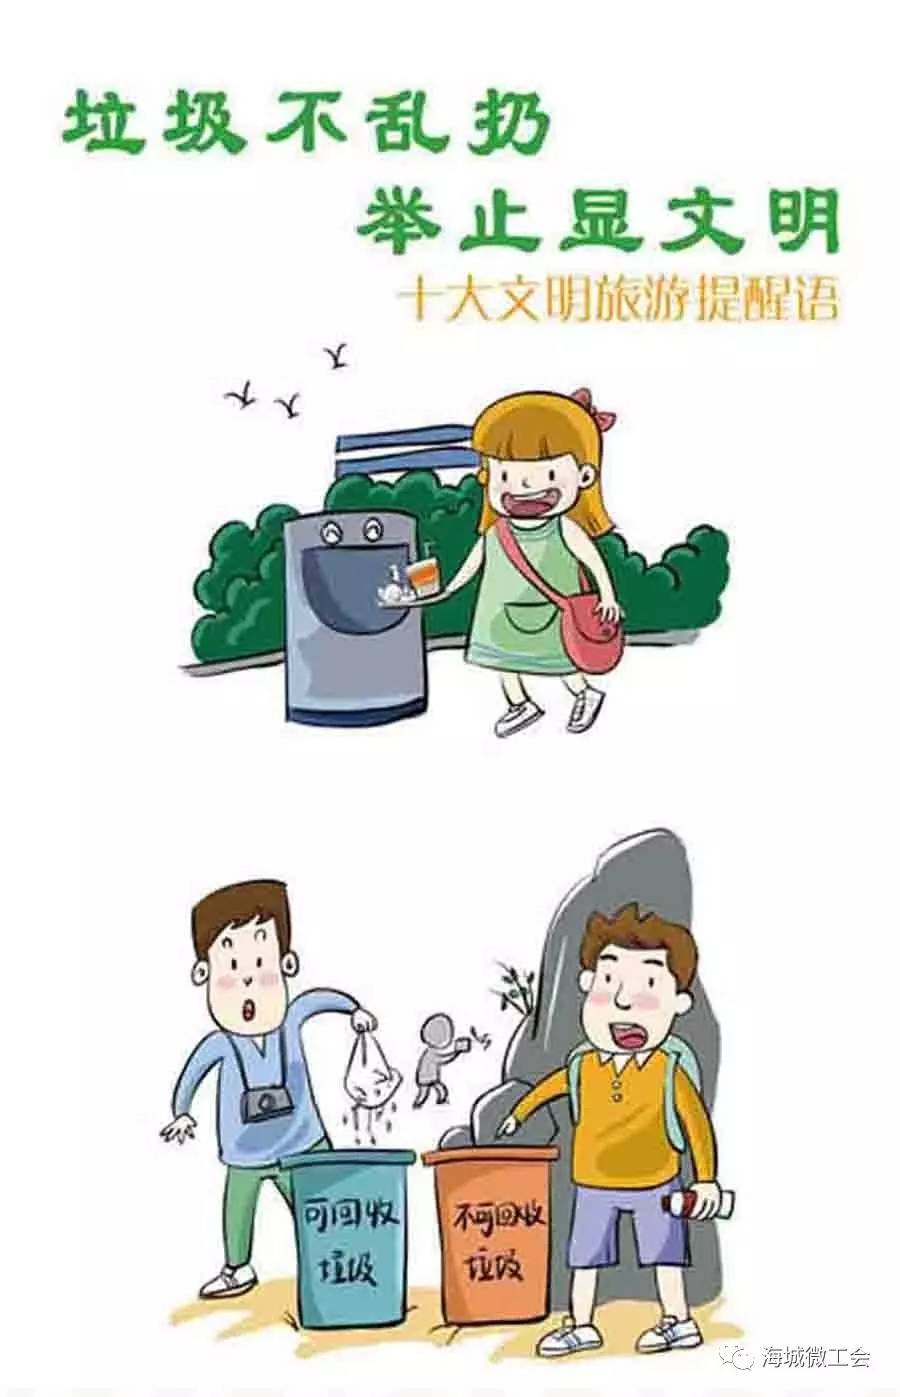 文明旅游小贴士:要把果皮,纸屑,杂物等废弃物丢进垃圾桶,不要随便丢弃